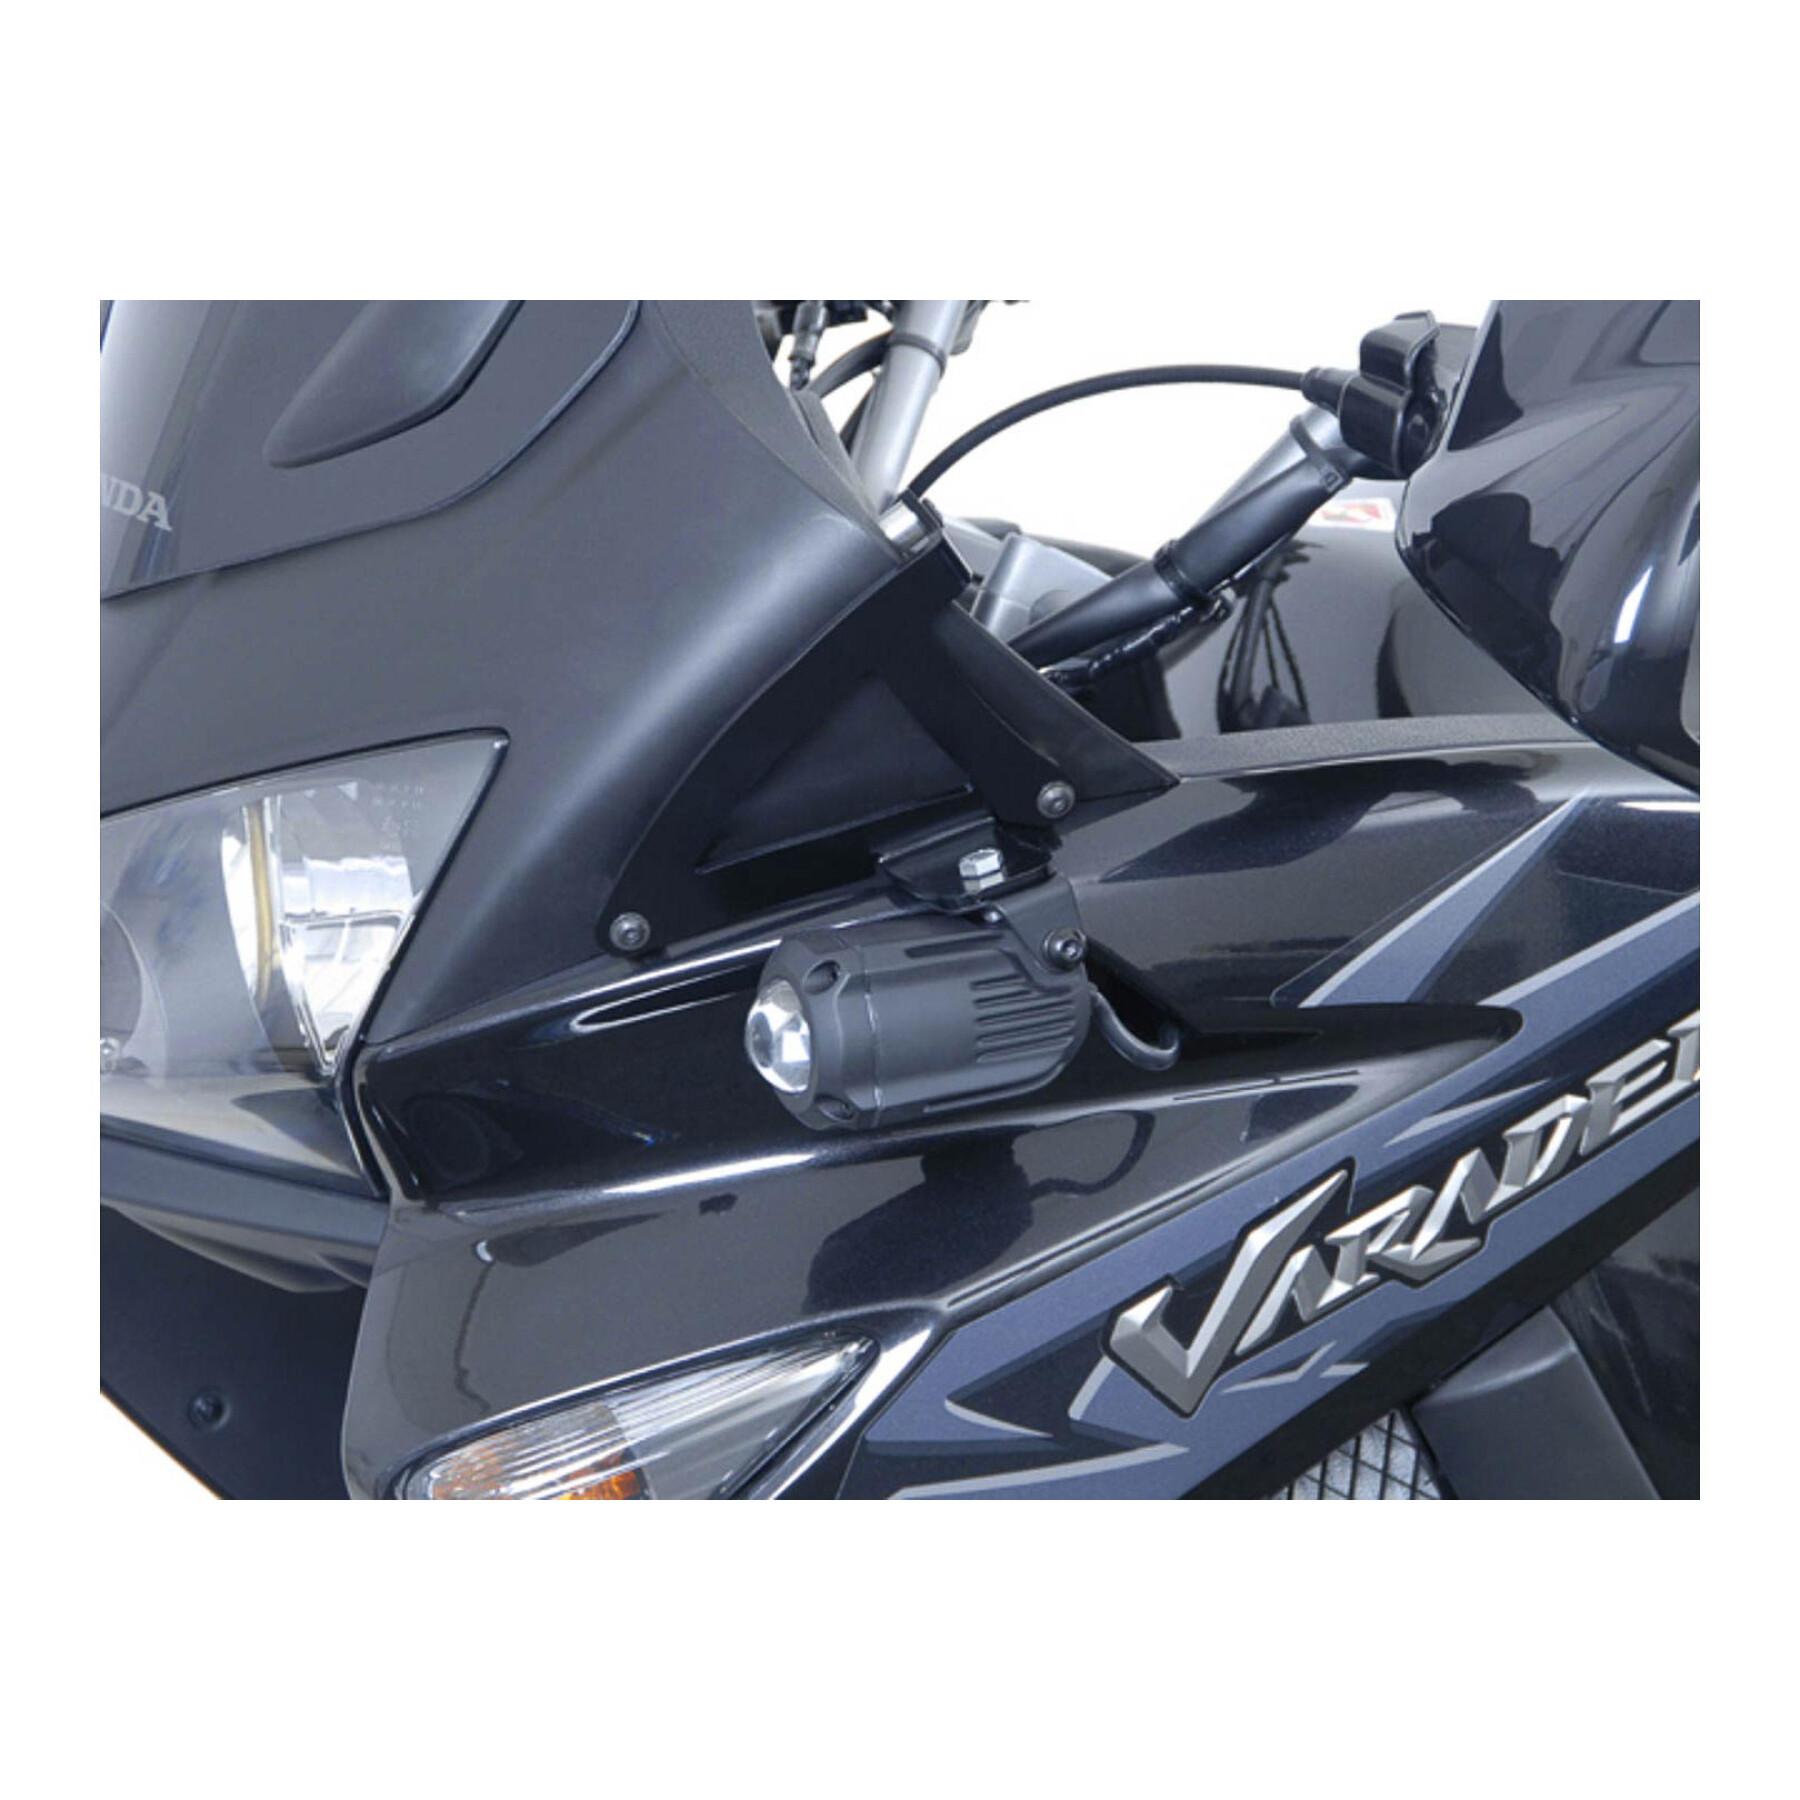 Luz led adicional para motos Sw-Motech Xl1000v Varadero (01-11)